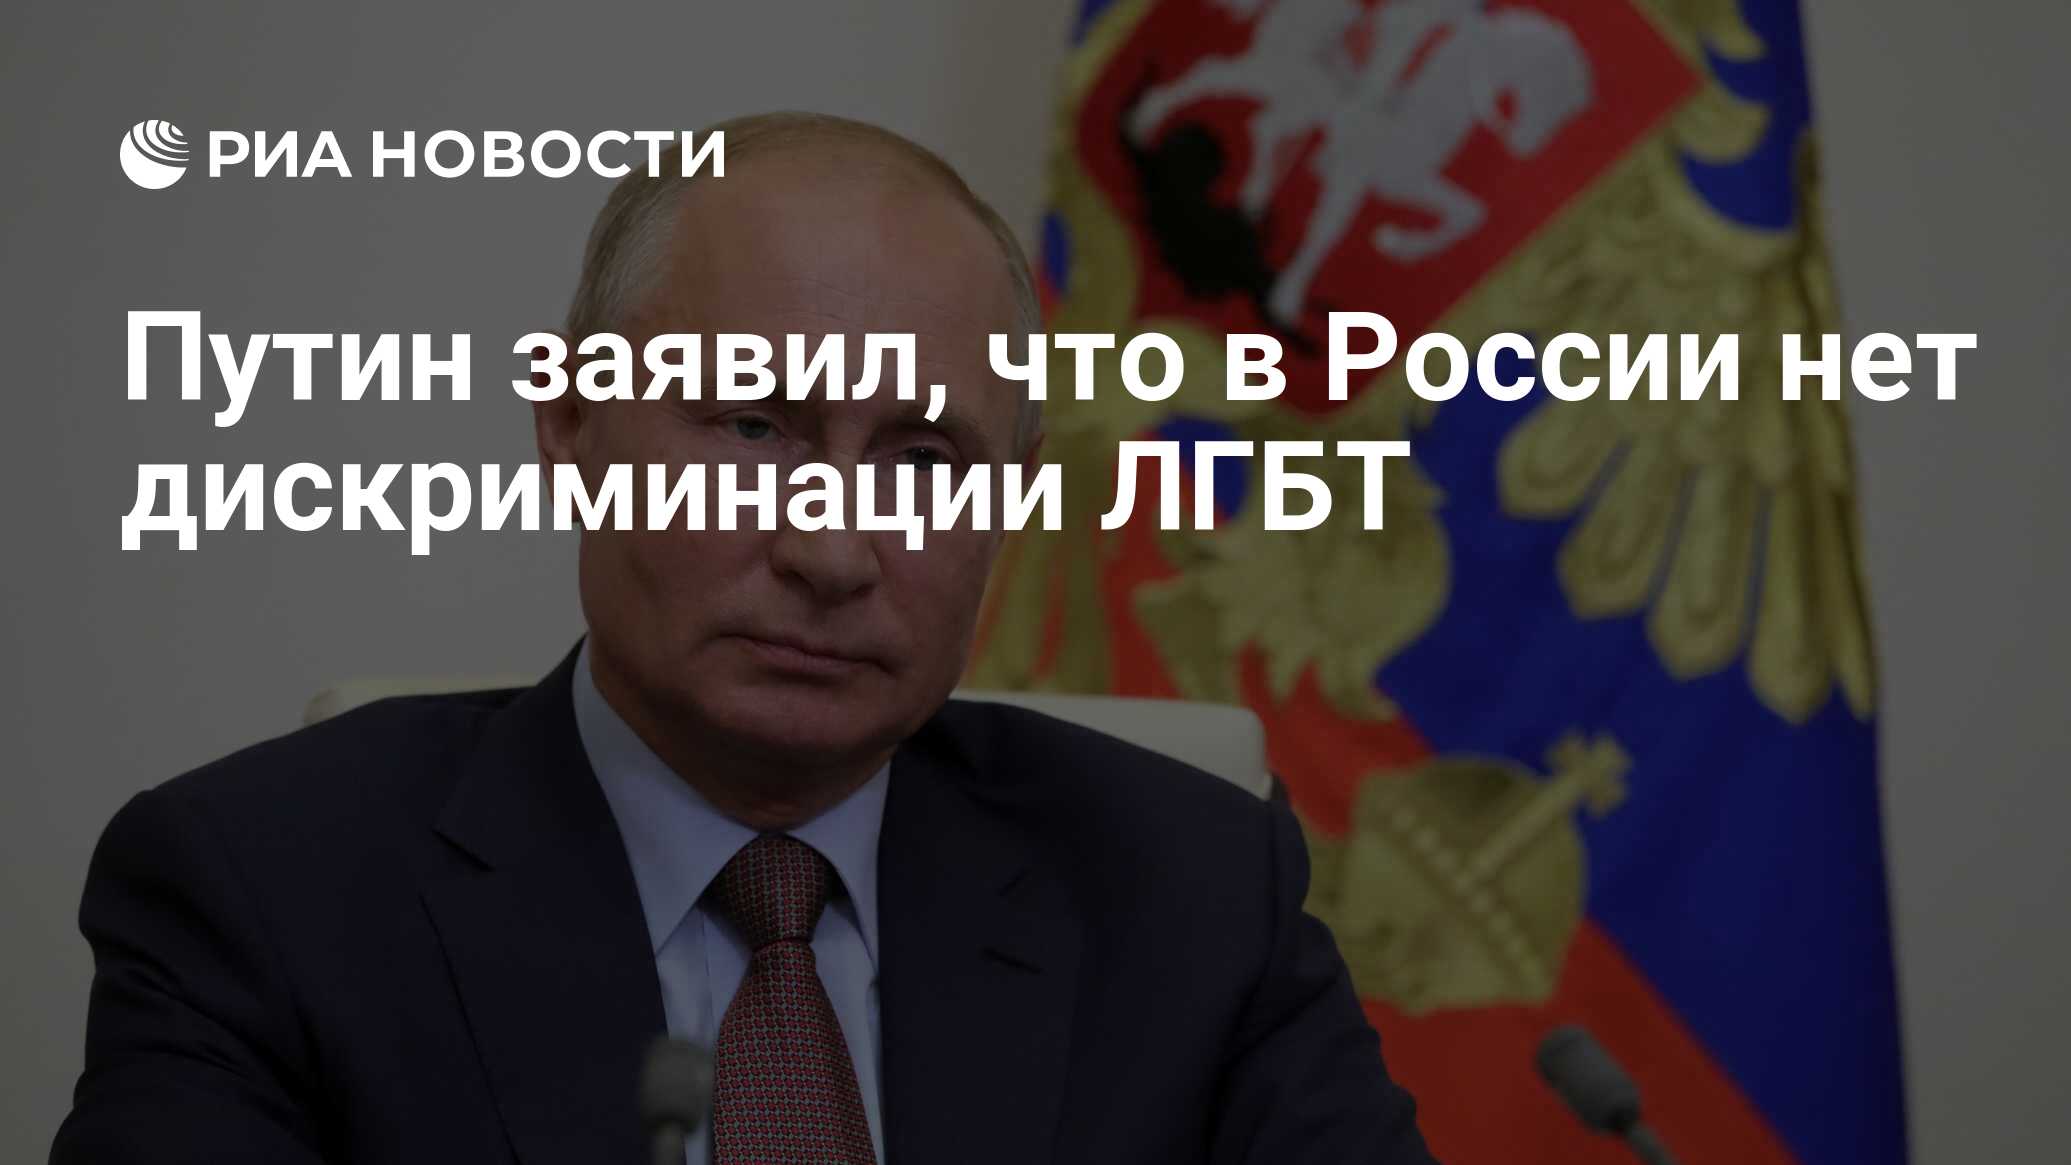 Путин заявил, что в России нет дискриминации ЛГБТ - РИА Новости, 03.07.2020